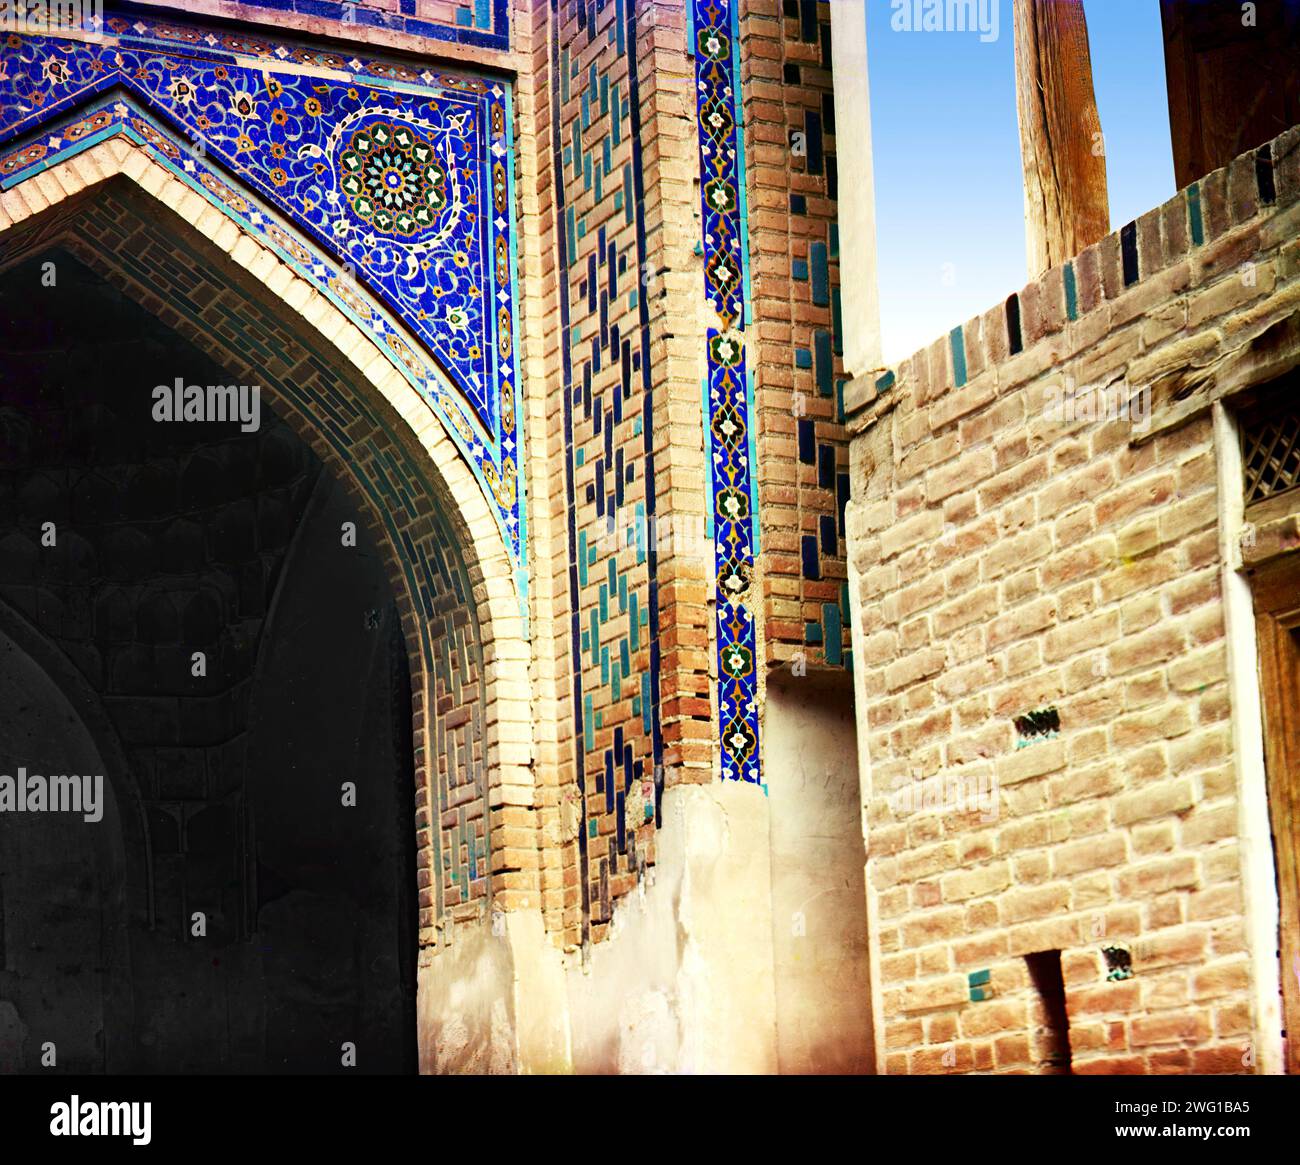 Passage des morts : détail au-dessus de l'entrée, Samarkand, entre 1905 et 1915. L'ensemble Shah-i-Zinda comprend des mausolées et d'autres édifices rituels des 11e-15e et 19e siècles. Banque D'Images